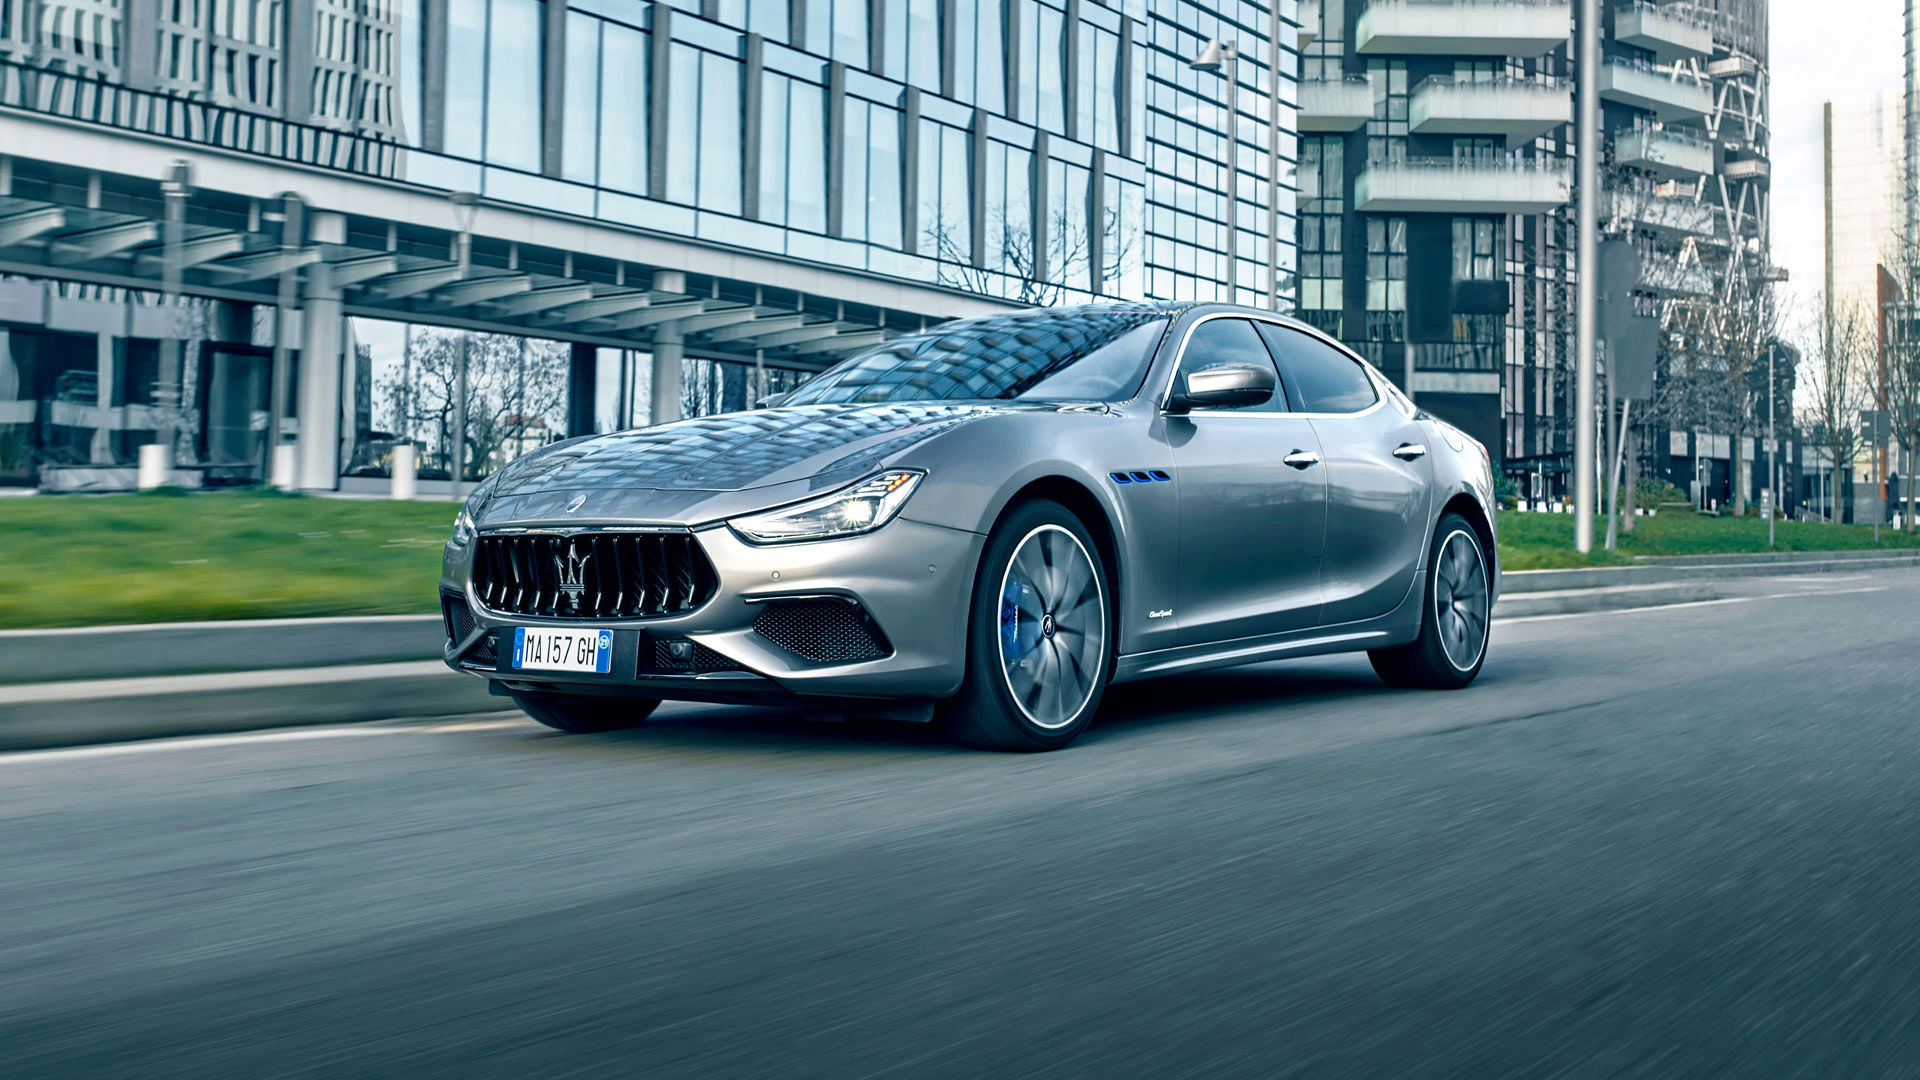 Modelo Maserati por la calle